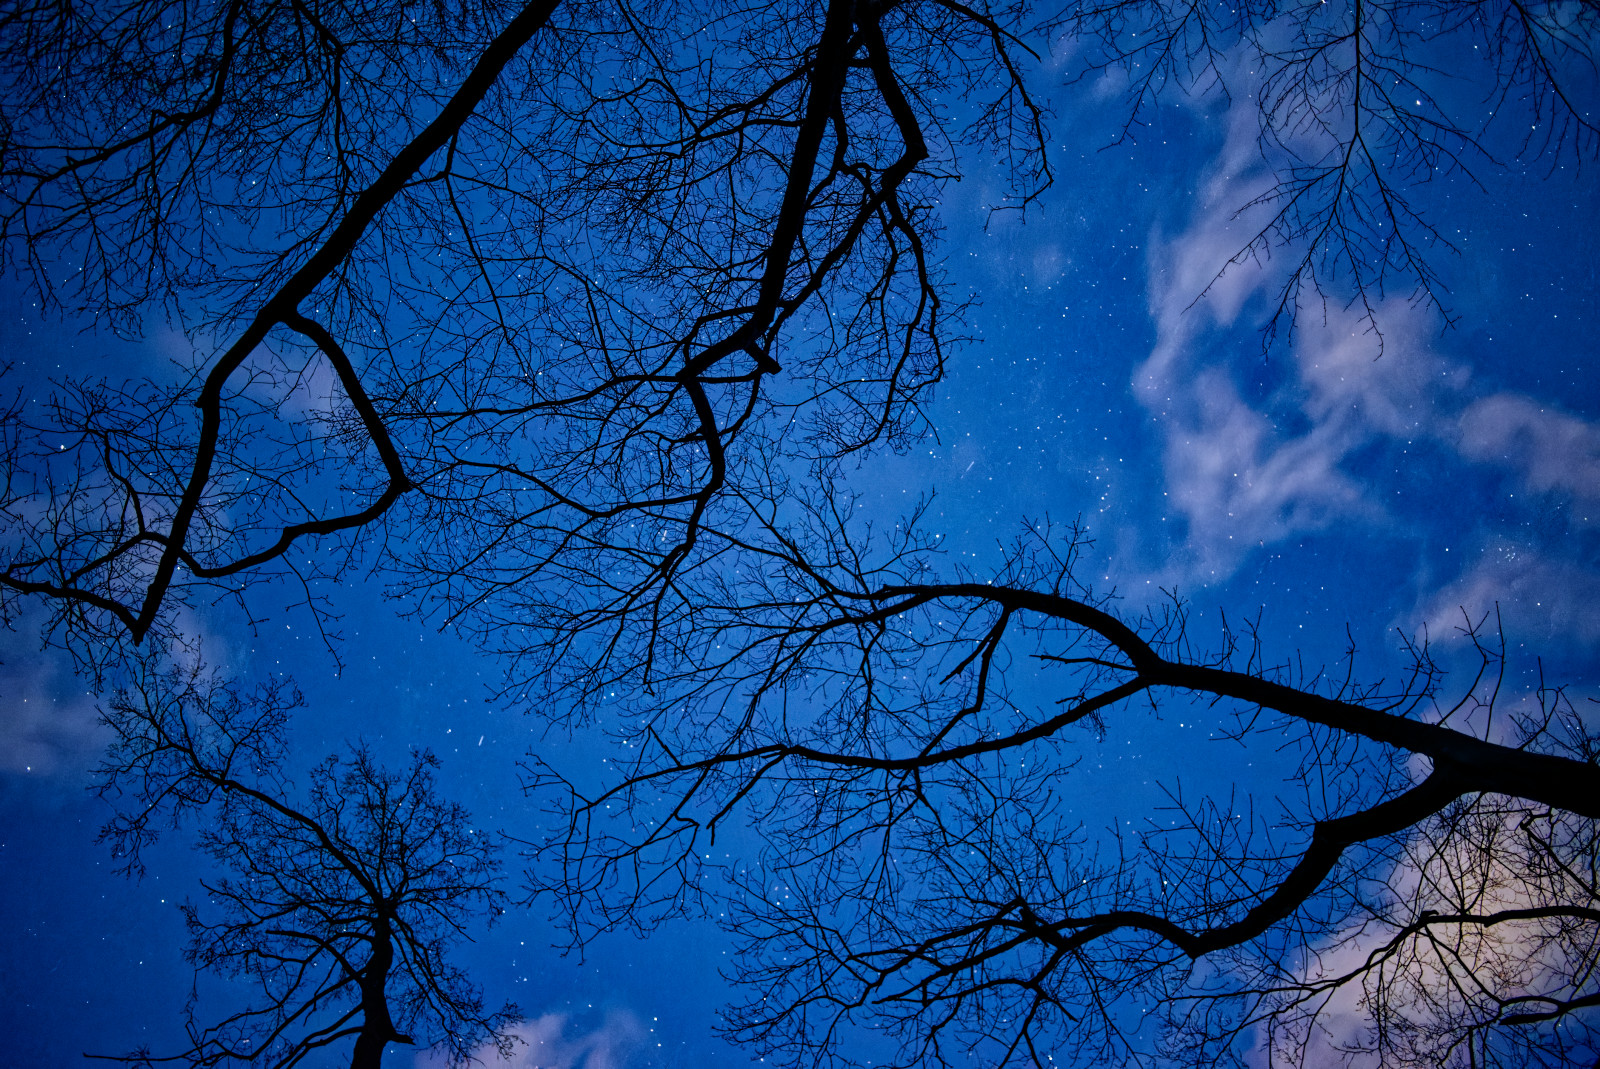 NachtHimmel: Nach oben fotografiert, fast klarer Himmel mit vielen Sternen und wenigen kleinen Wolken, davor die Silhouetten mehrerer Bäume.